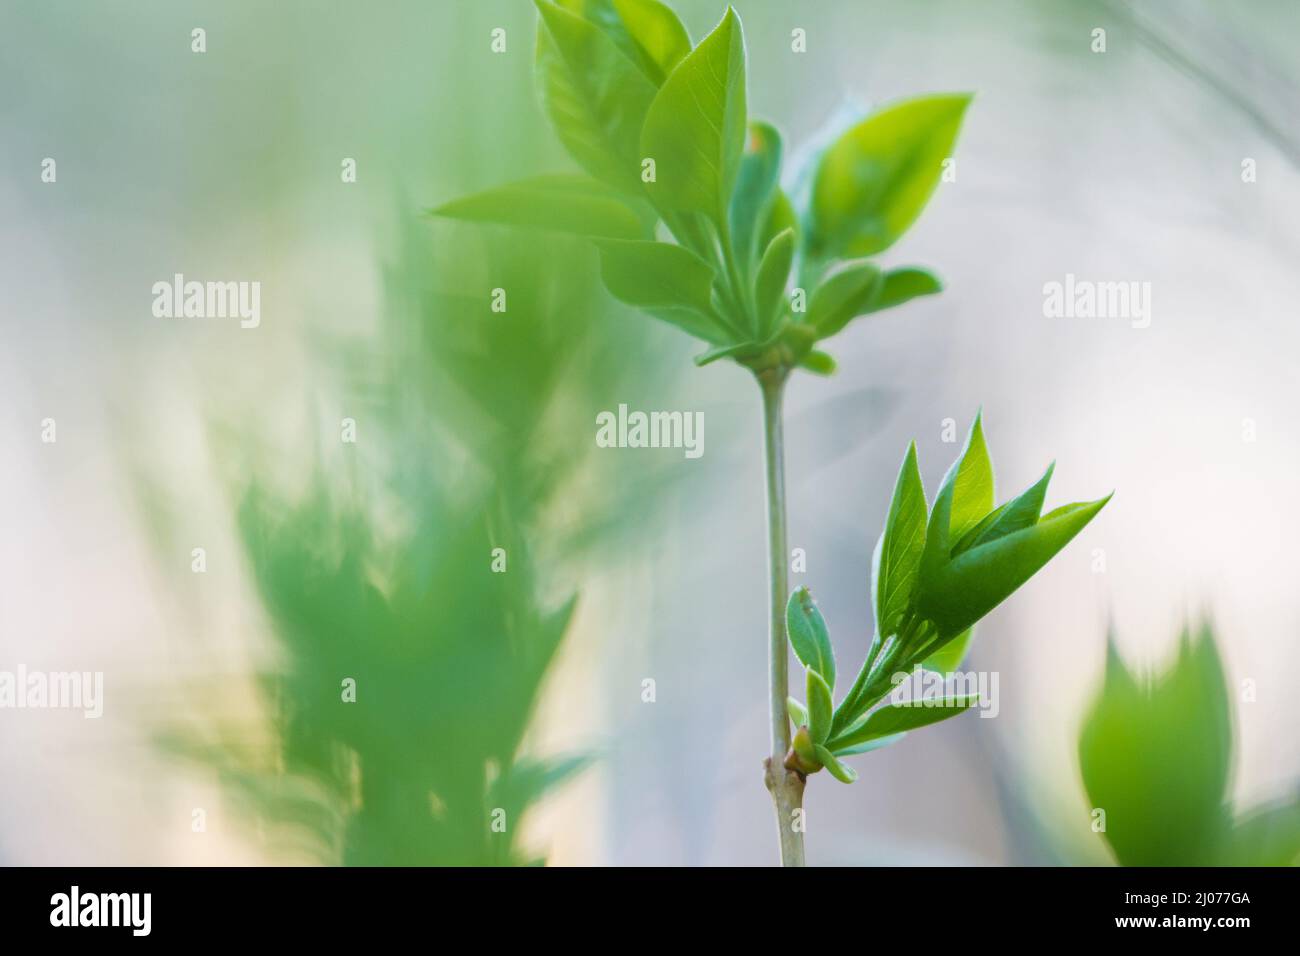 Branche de lilas (Syringa vulgaris), jeunes feuilles vertes en bourgeonnement au printemps. Banque D'Images